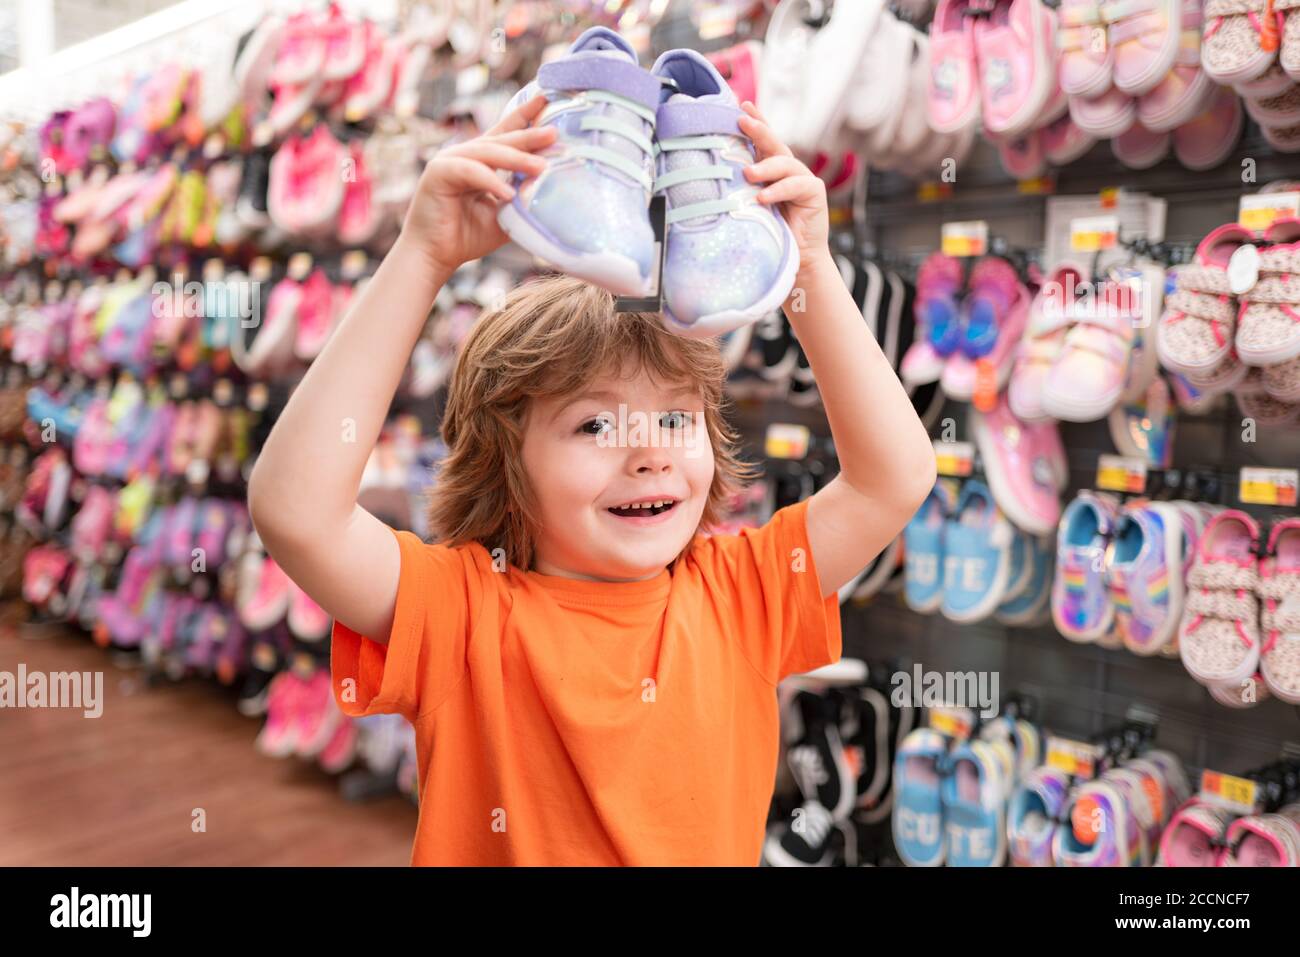 Los niños de la tienda de zapatos en supermercado, la elección de los niños en la tienda de zapatos. Tienda de zapatos para niños. Niño en tienda de zapatos supermercado.